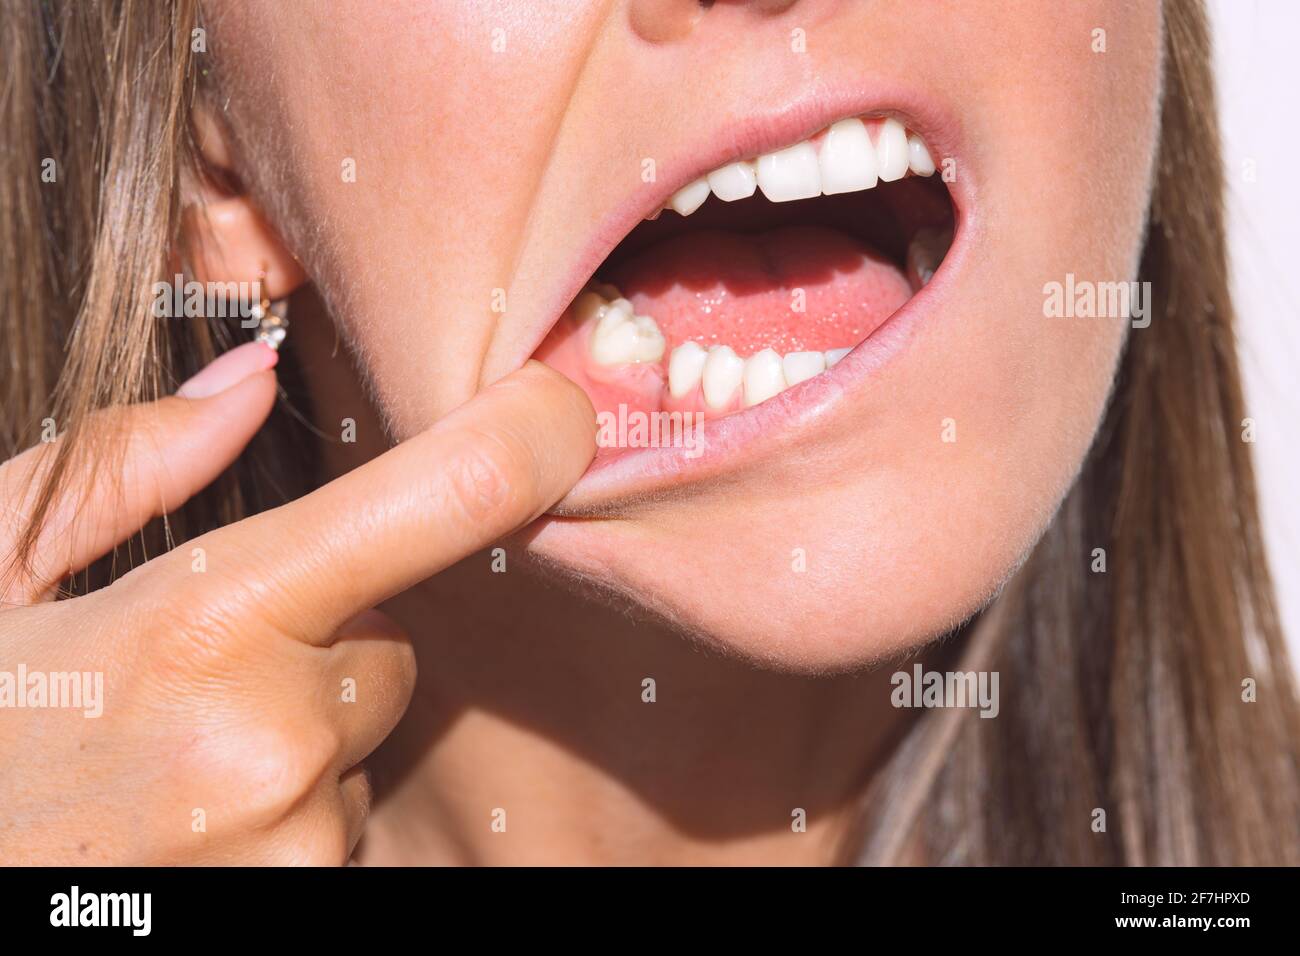 Giovane donna che mostra la bocca senza dente sulla mascella inferiore. Dente mancante, nessun dente. In attesa di un impianto dopo l'estrazione del dente Foto Stock